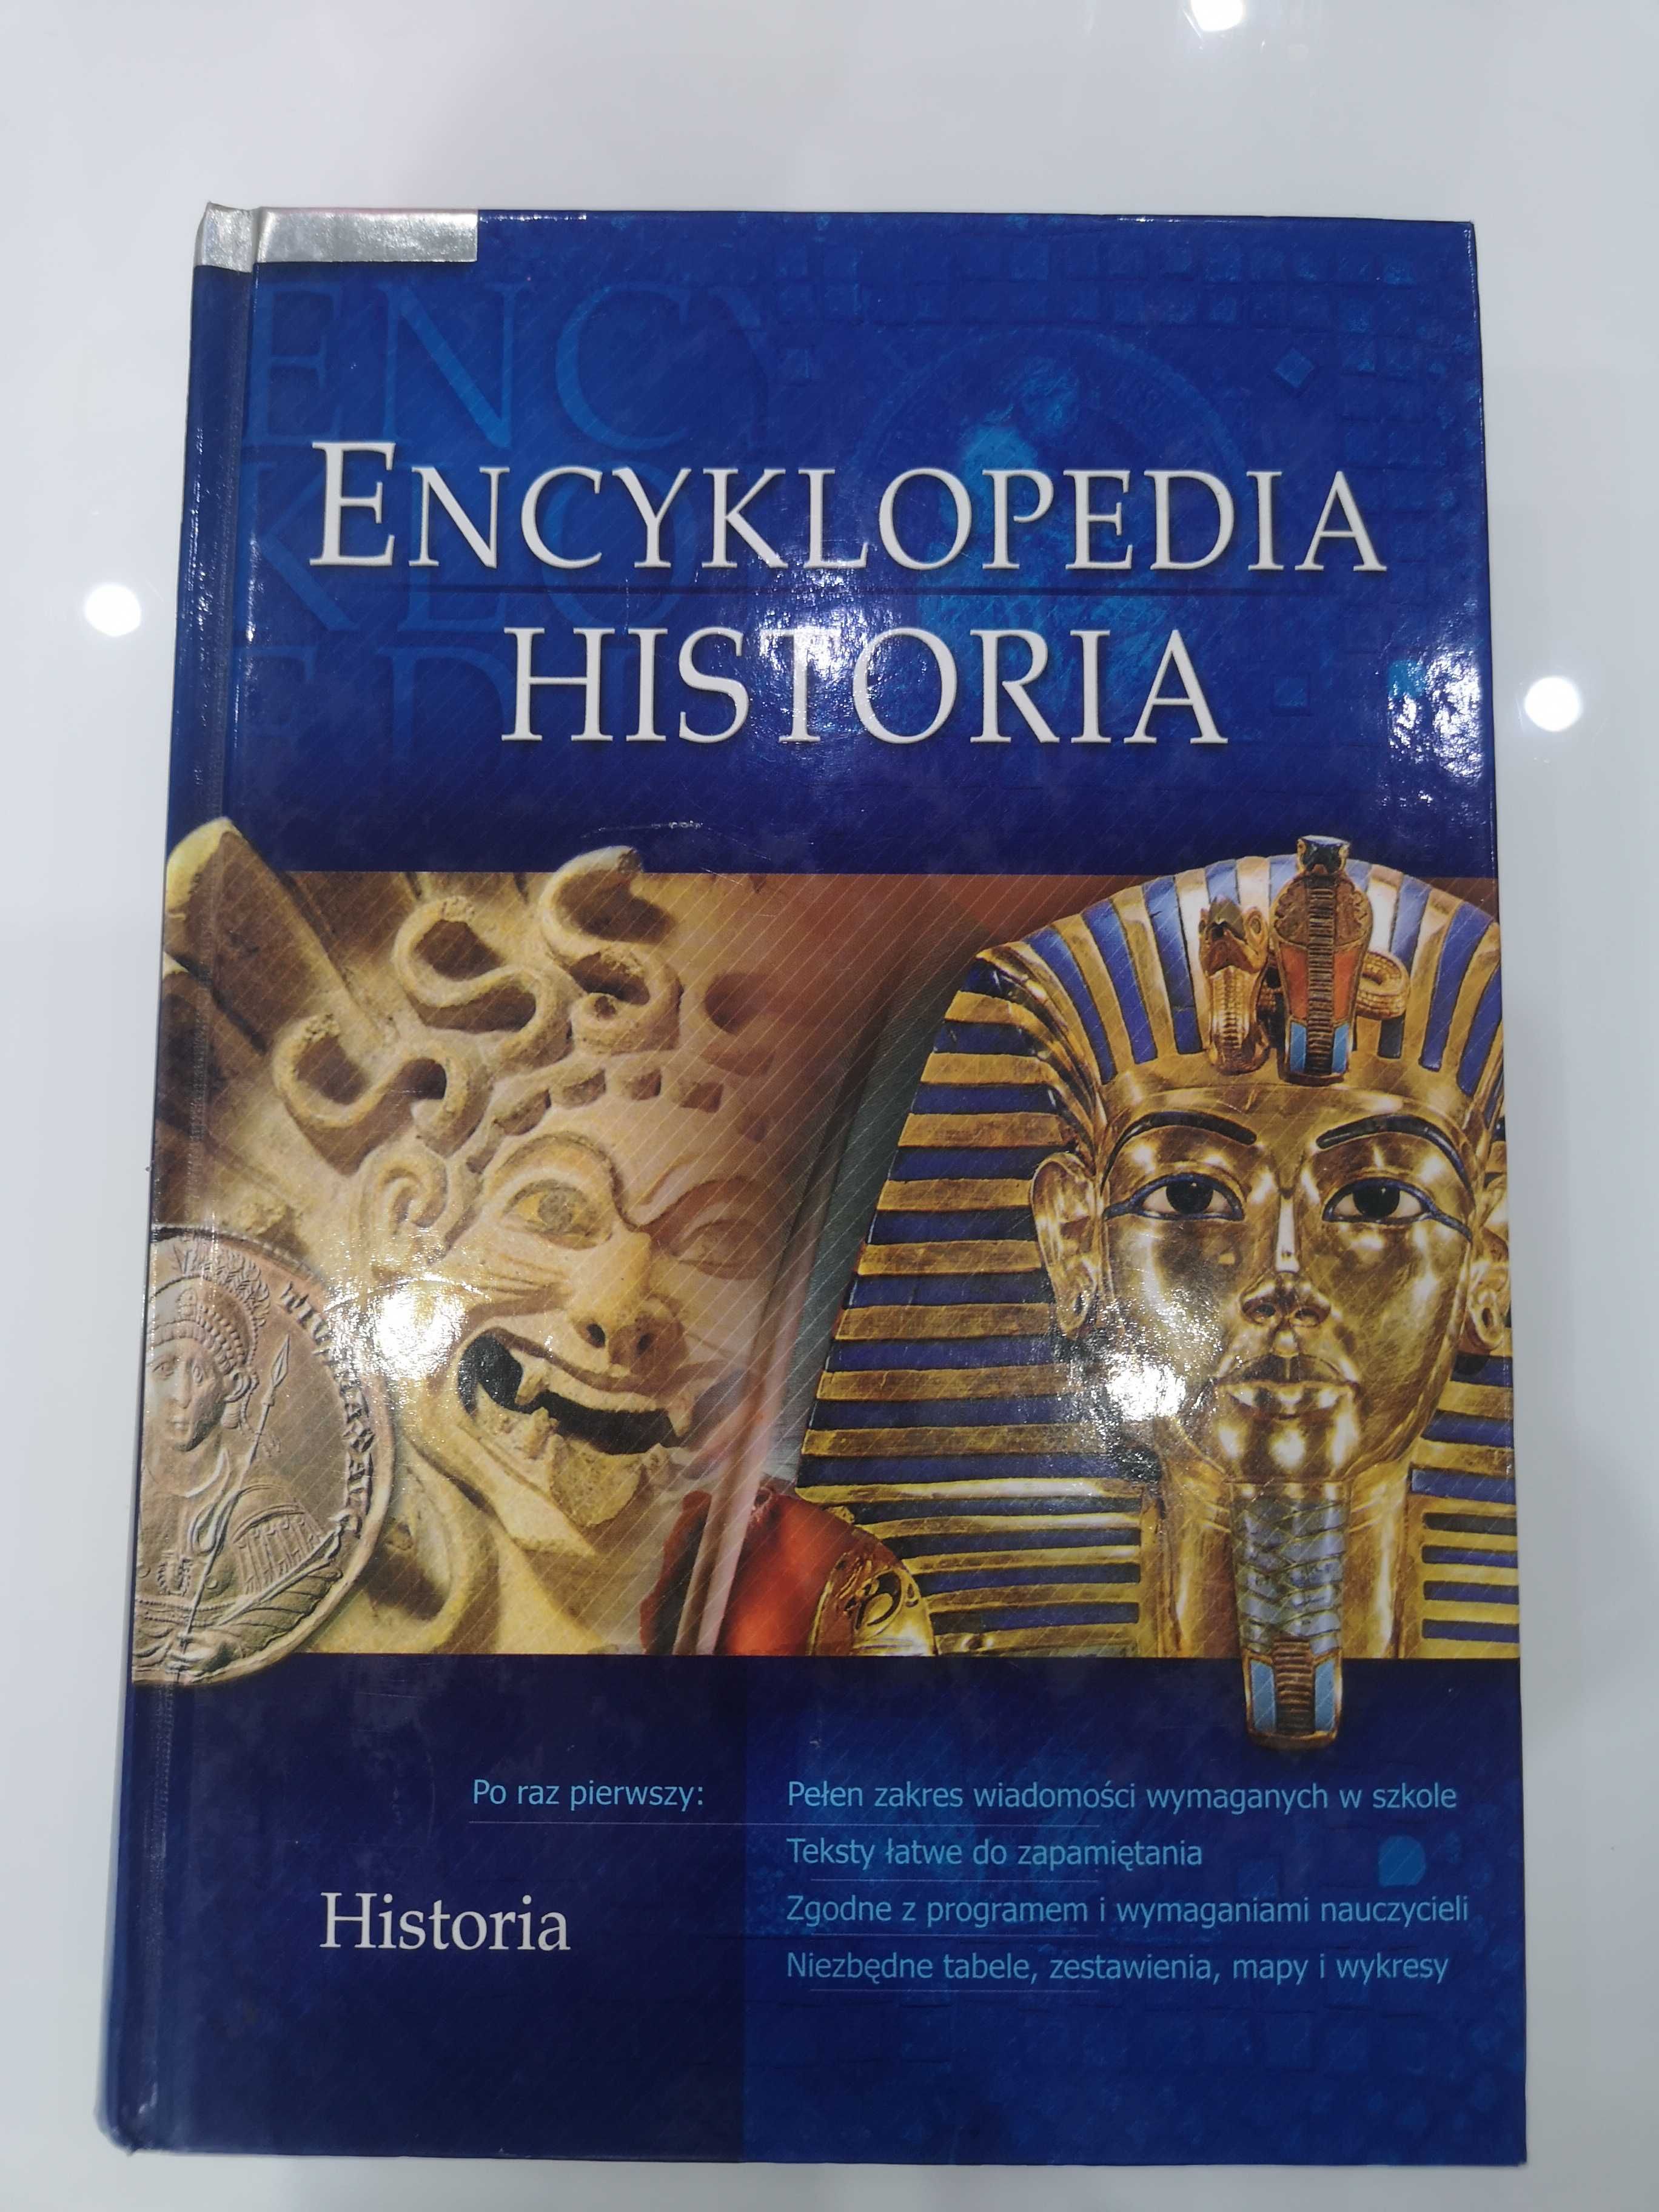 Encyklopedia historia, GREG 2006